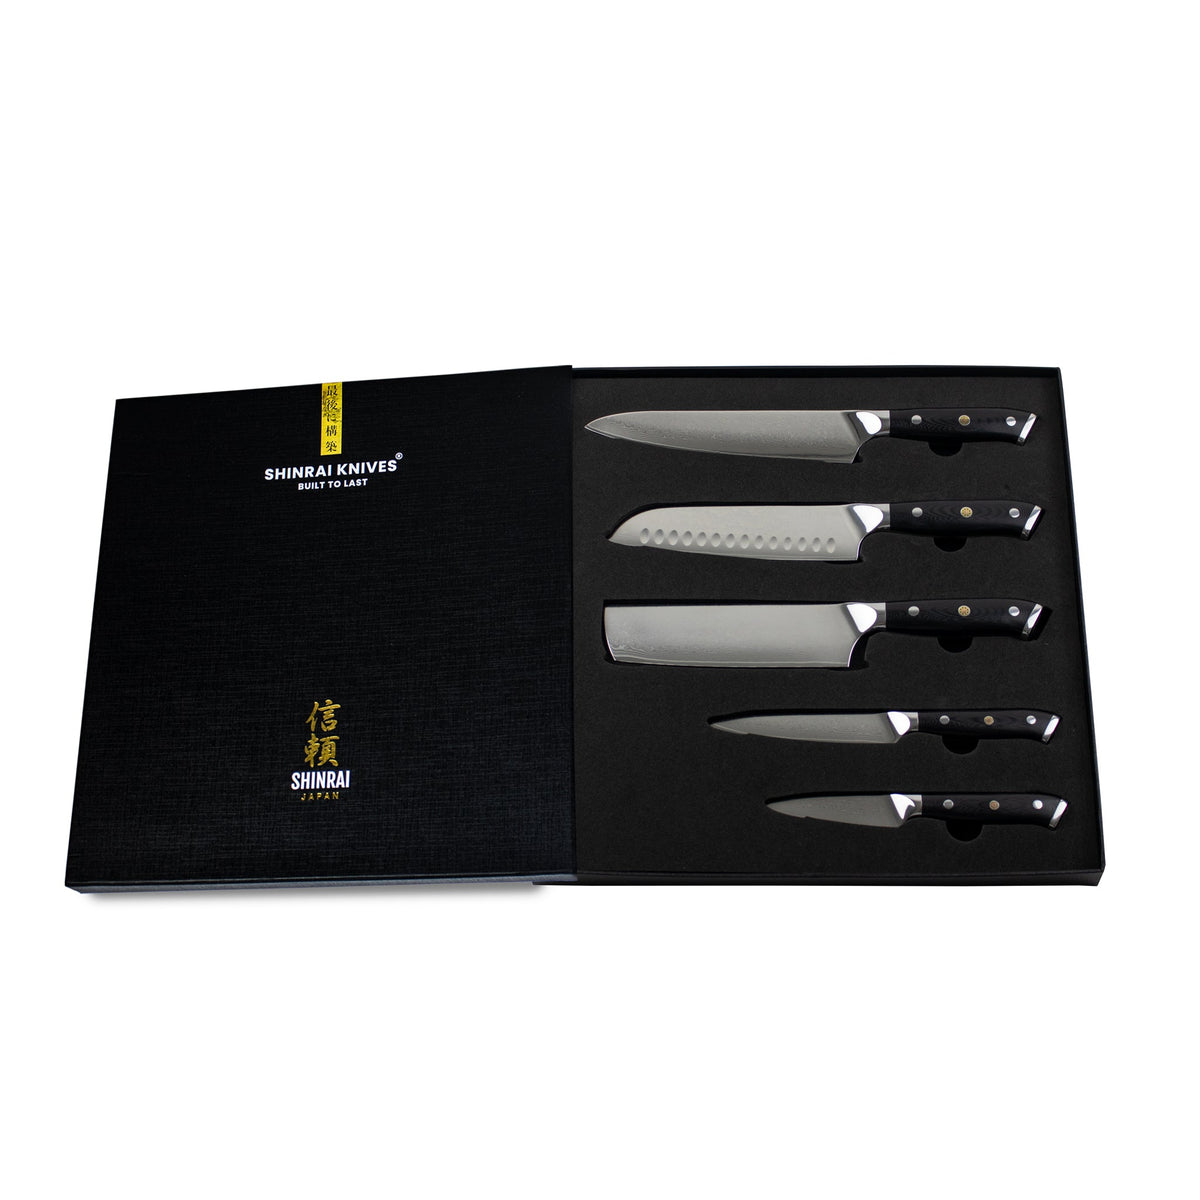 Damask Gold 5 Piece Kitchen Knife & Acrylic Knife Block Set